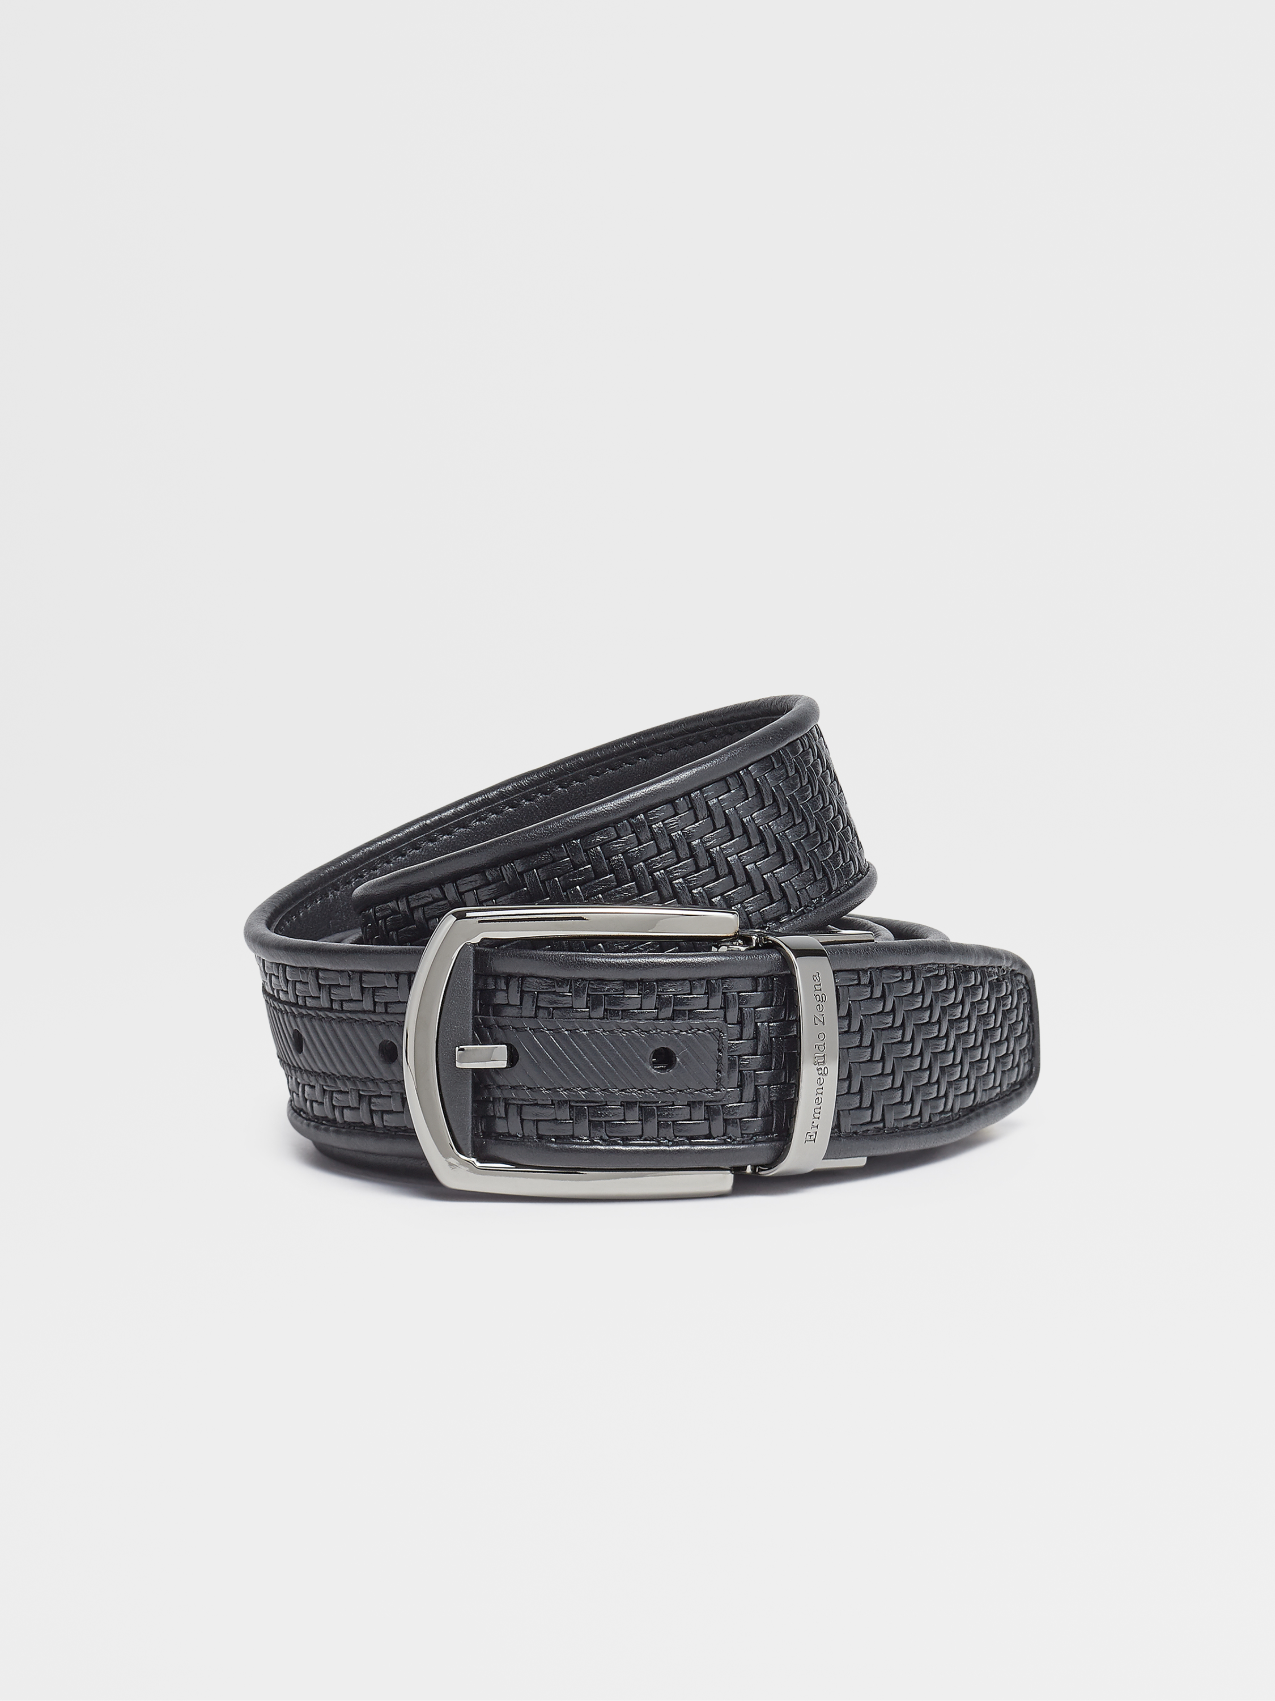 PELLETESSUTA™ Black Smooth Leather Belt